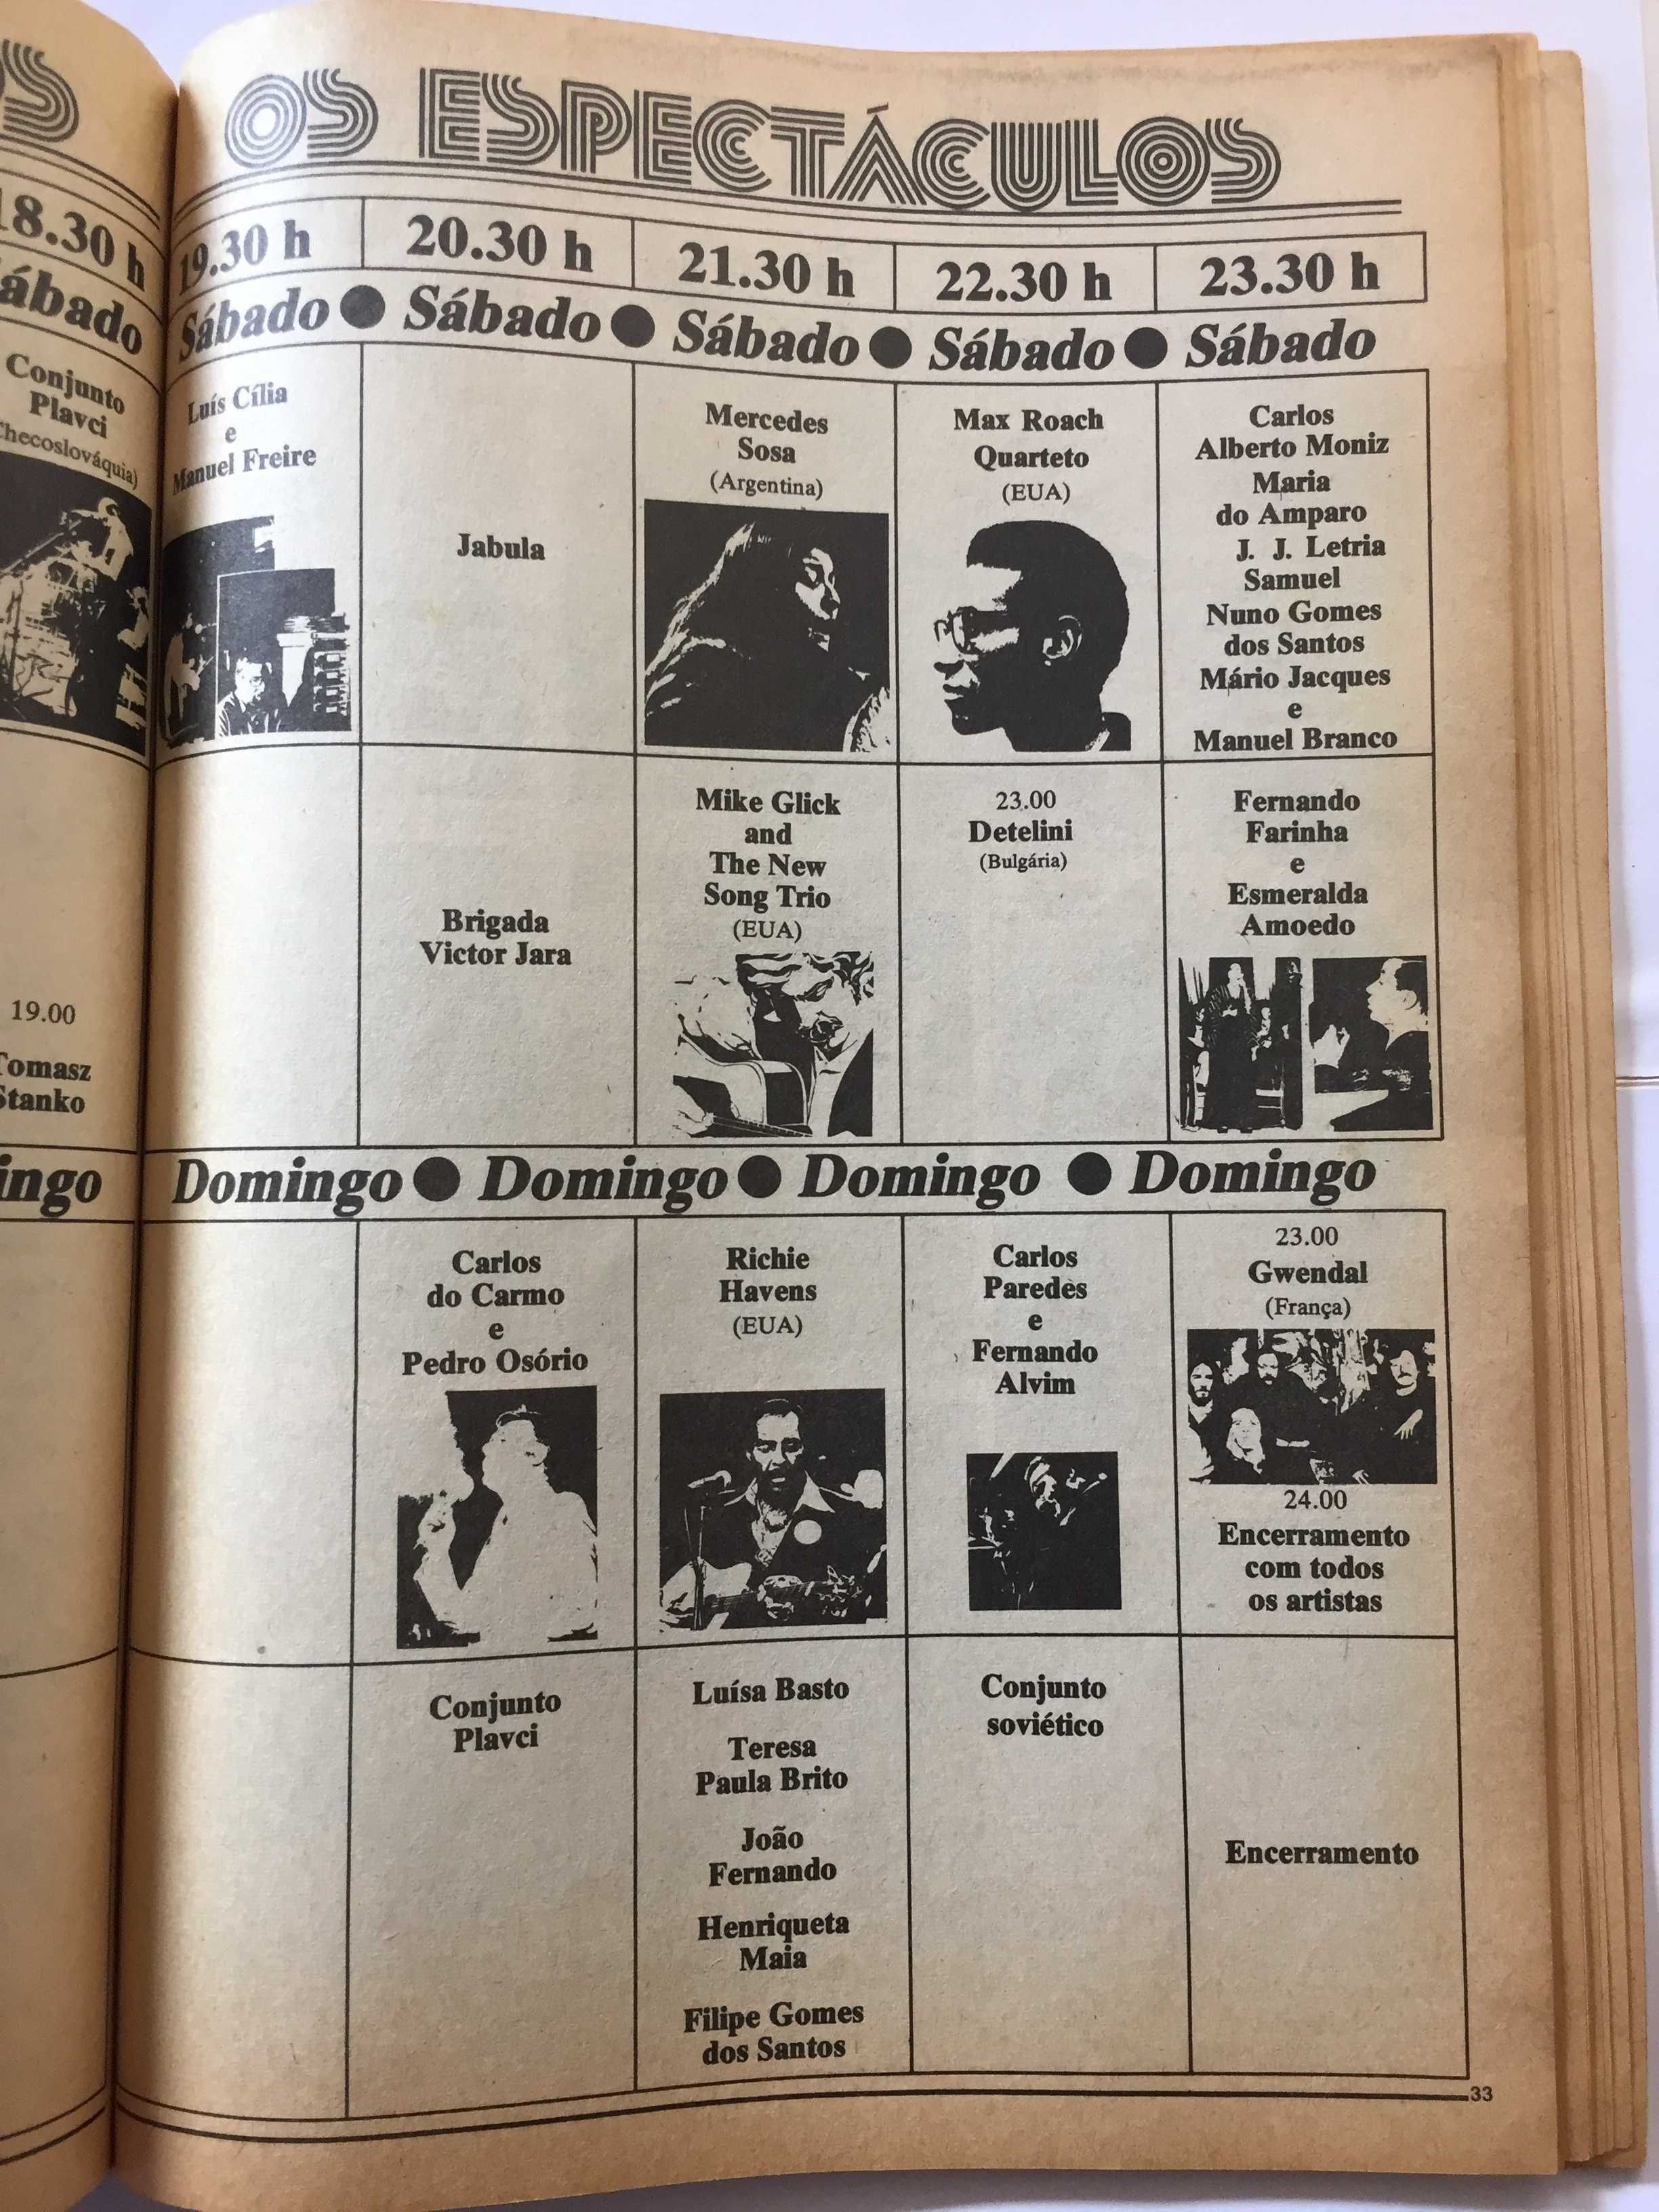 FESTA do AVANTE 1979 (Livro Programa)-Partido Comunista Português-80p.